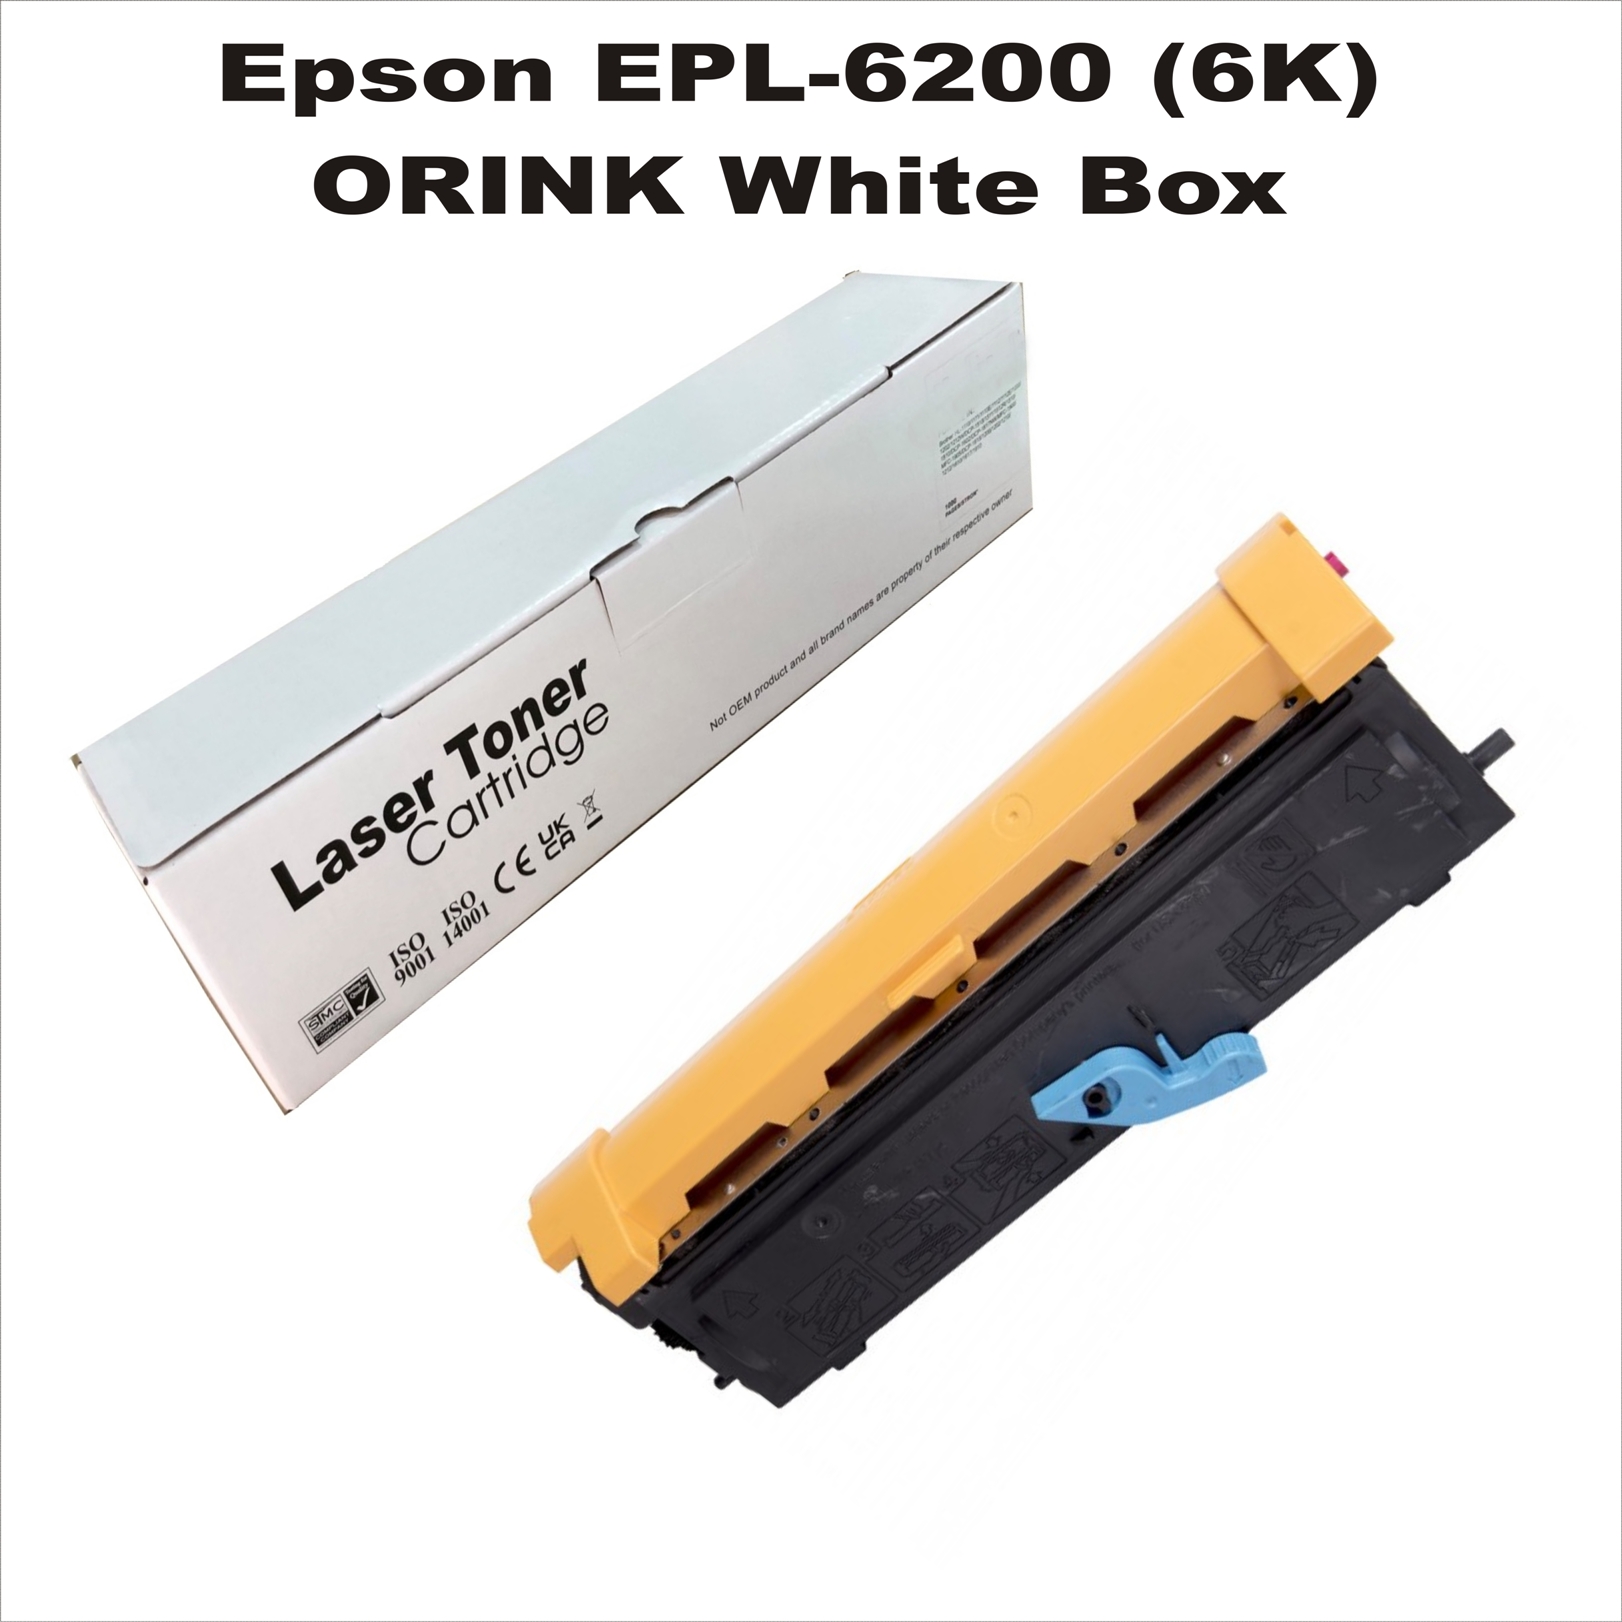 Epson EPL-6200 (6K) ORINK White Box